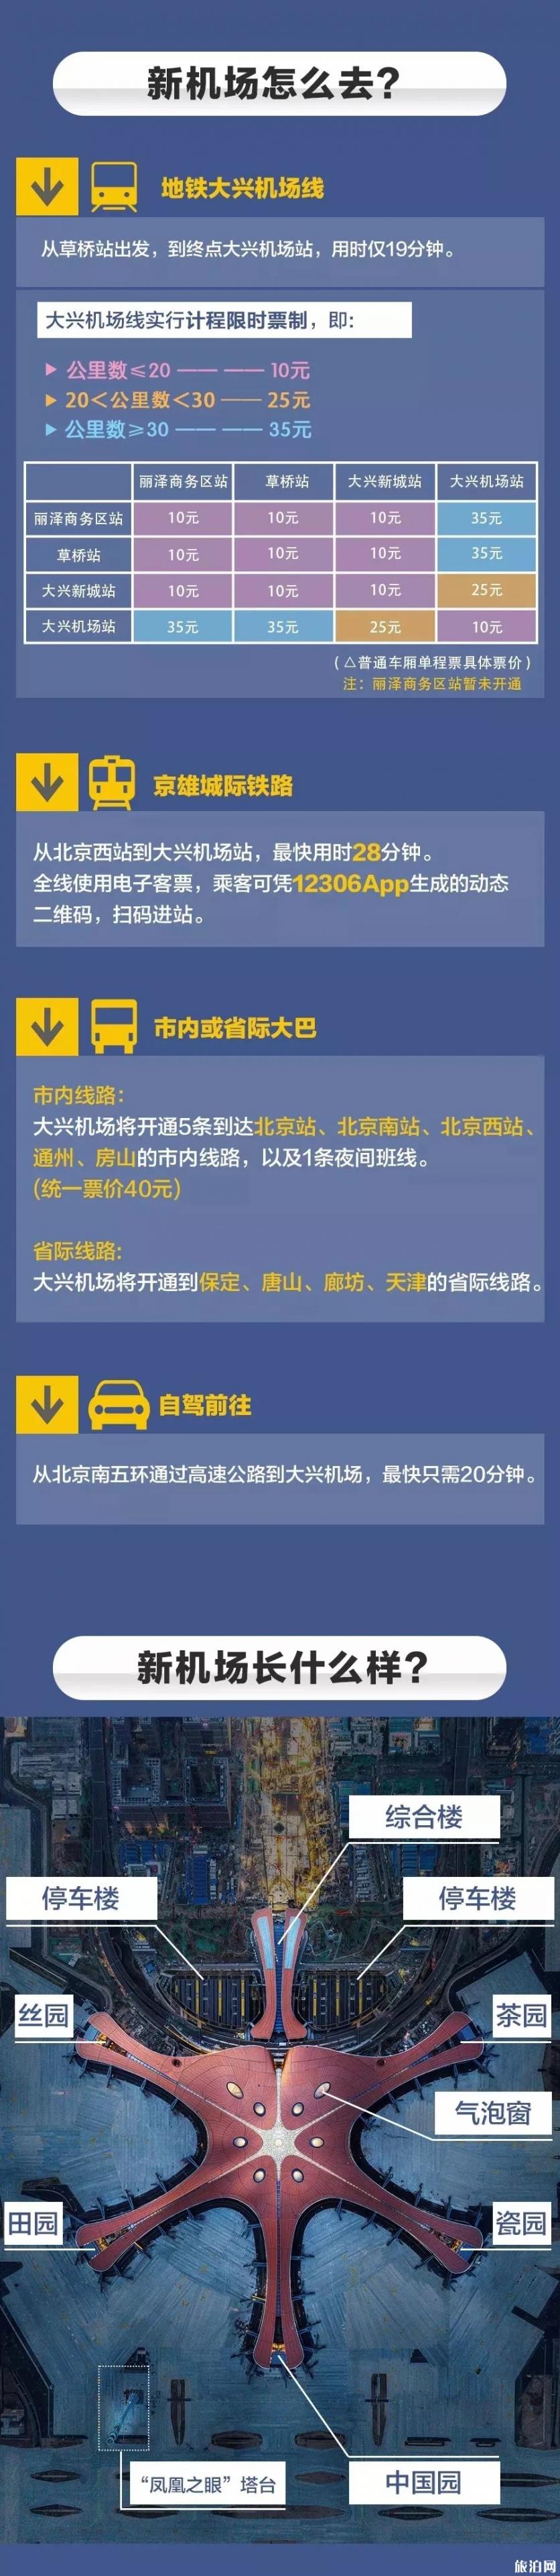 2019北京大兴机场冬春航季航线信息